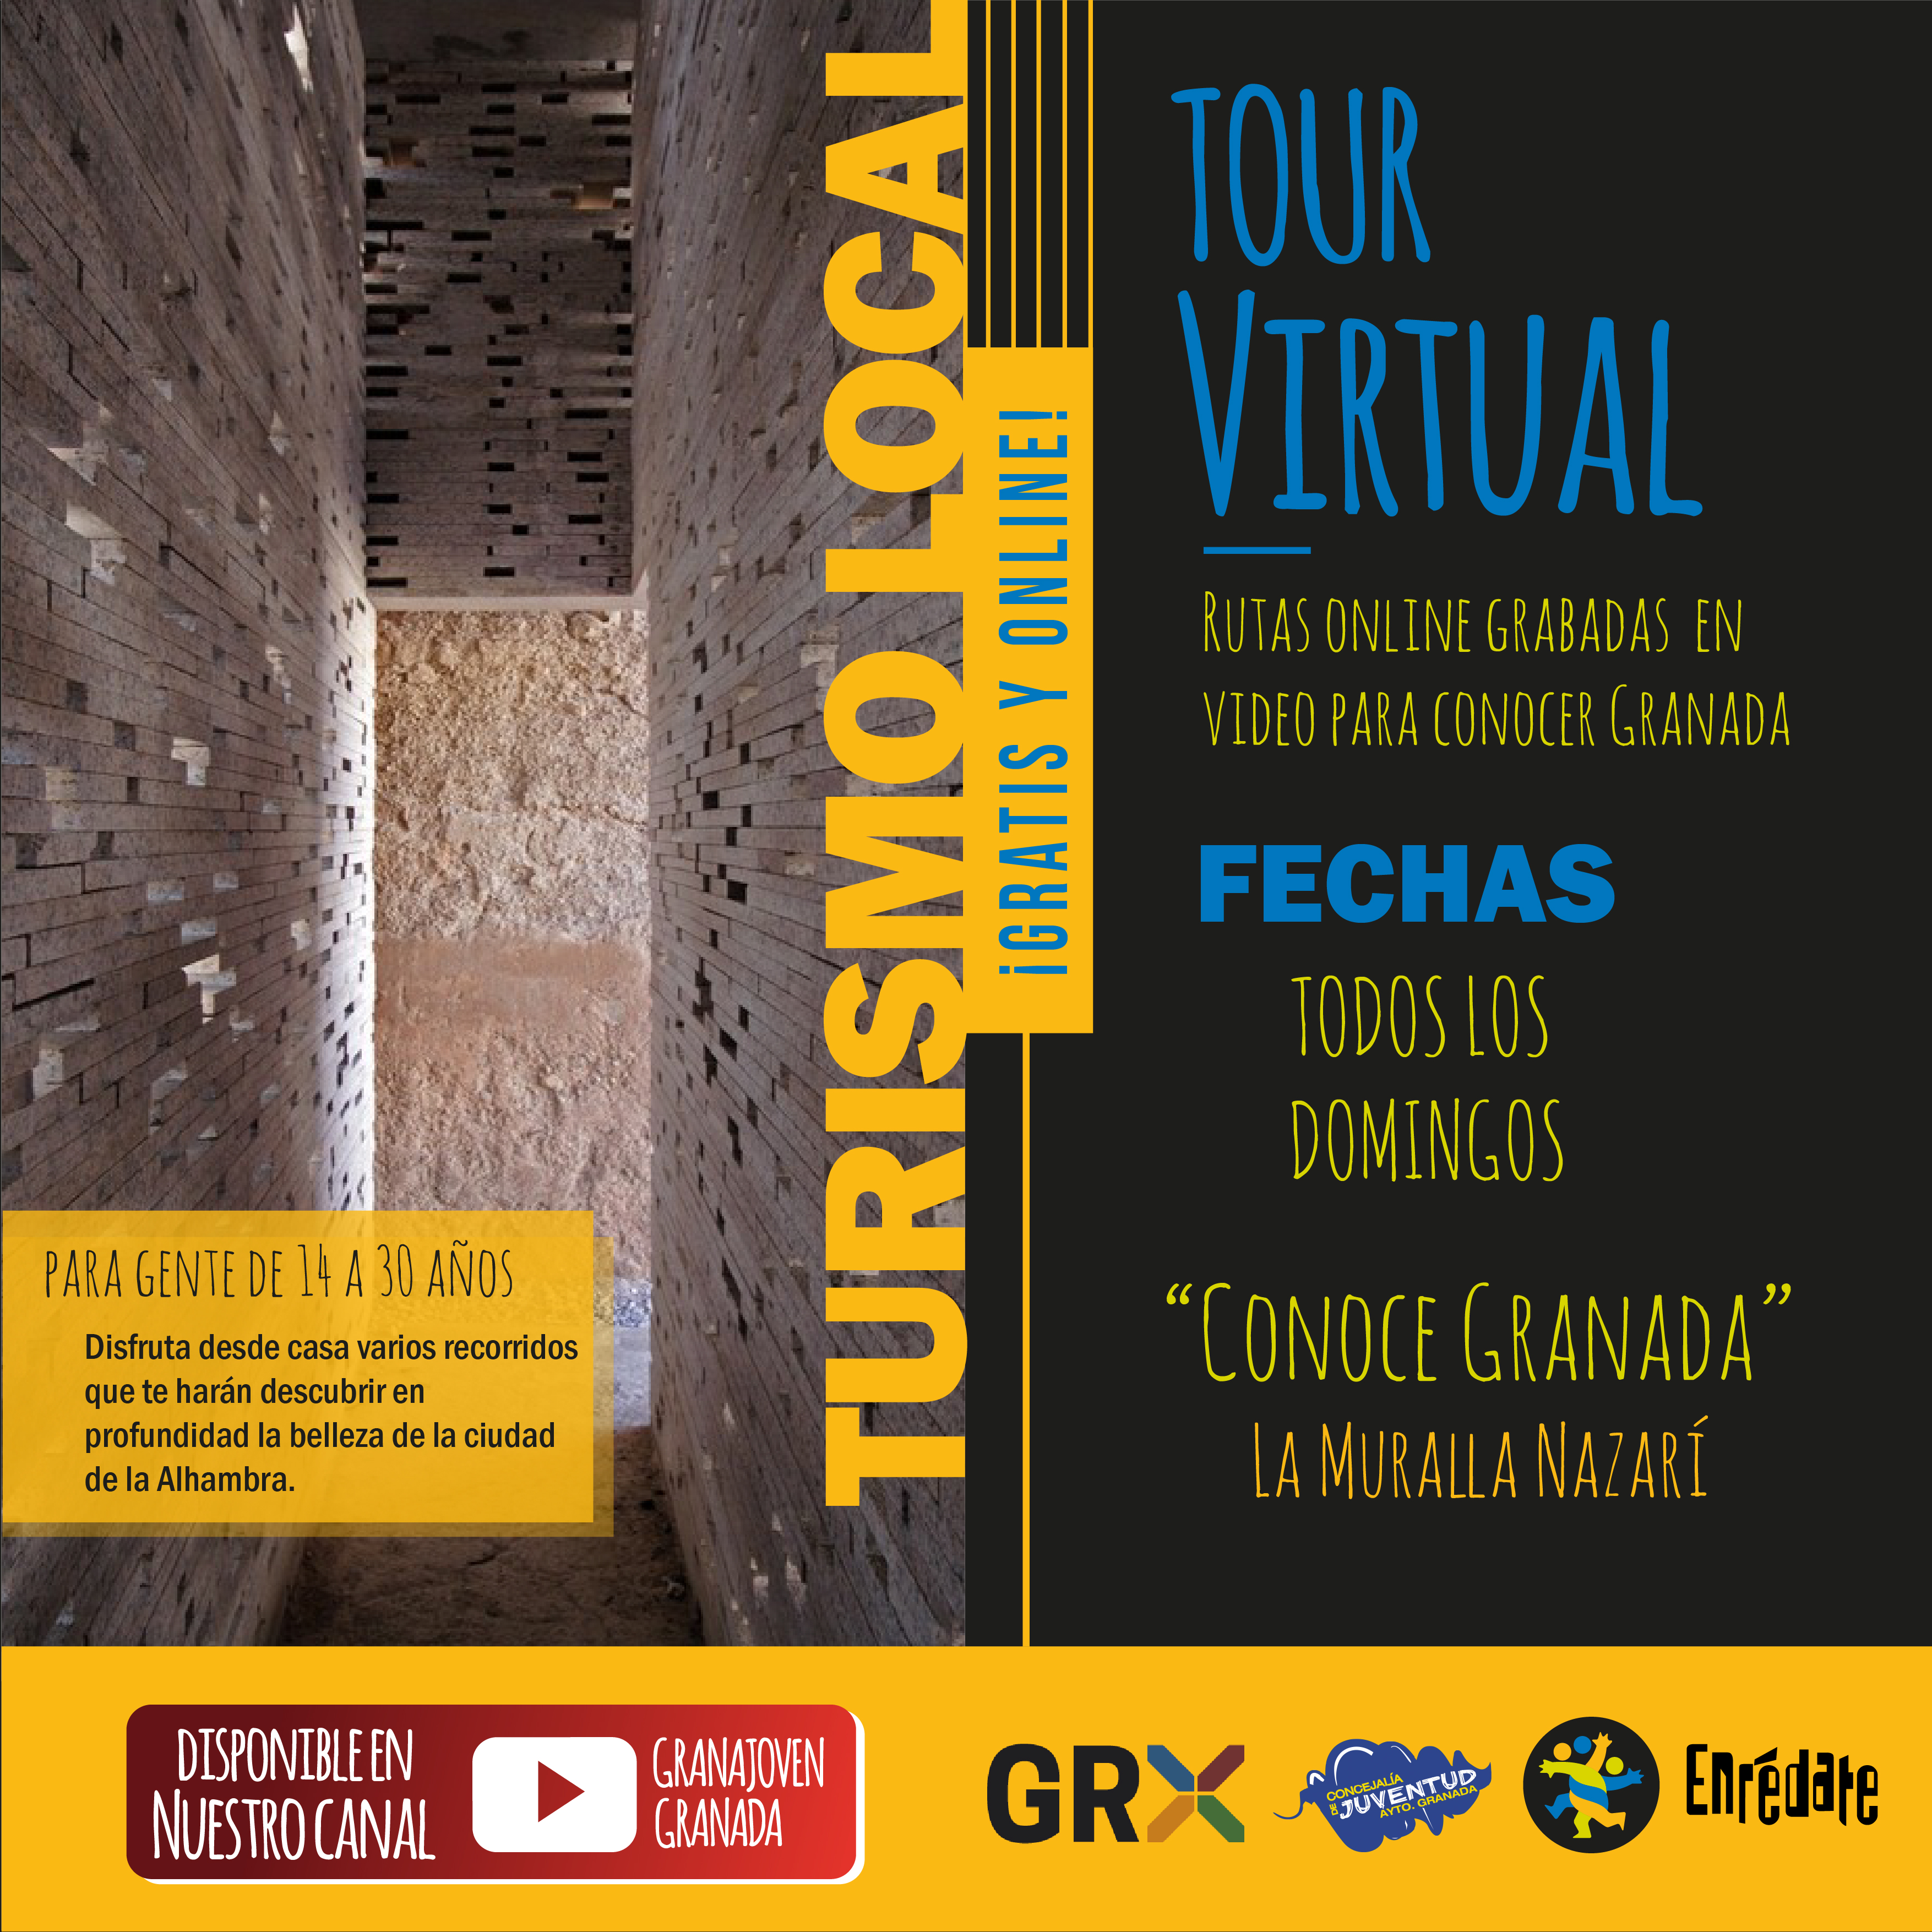 Enredate. Tour Virtual